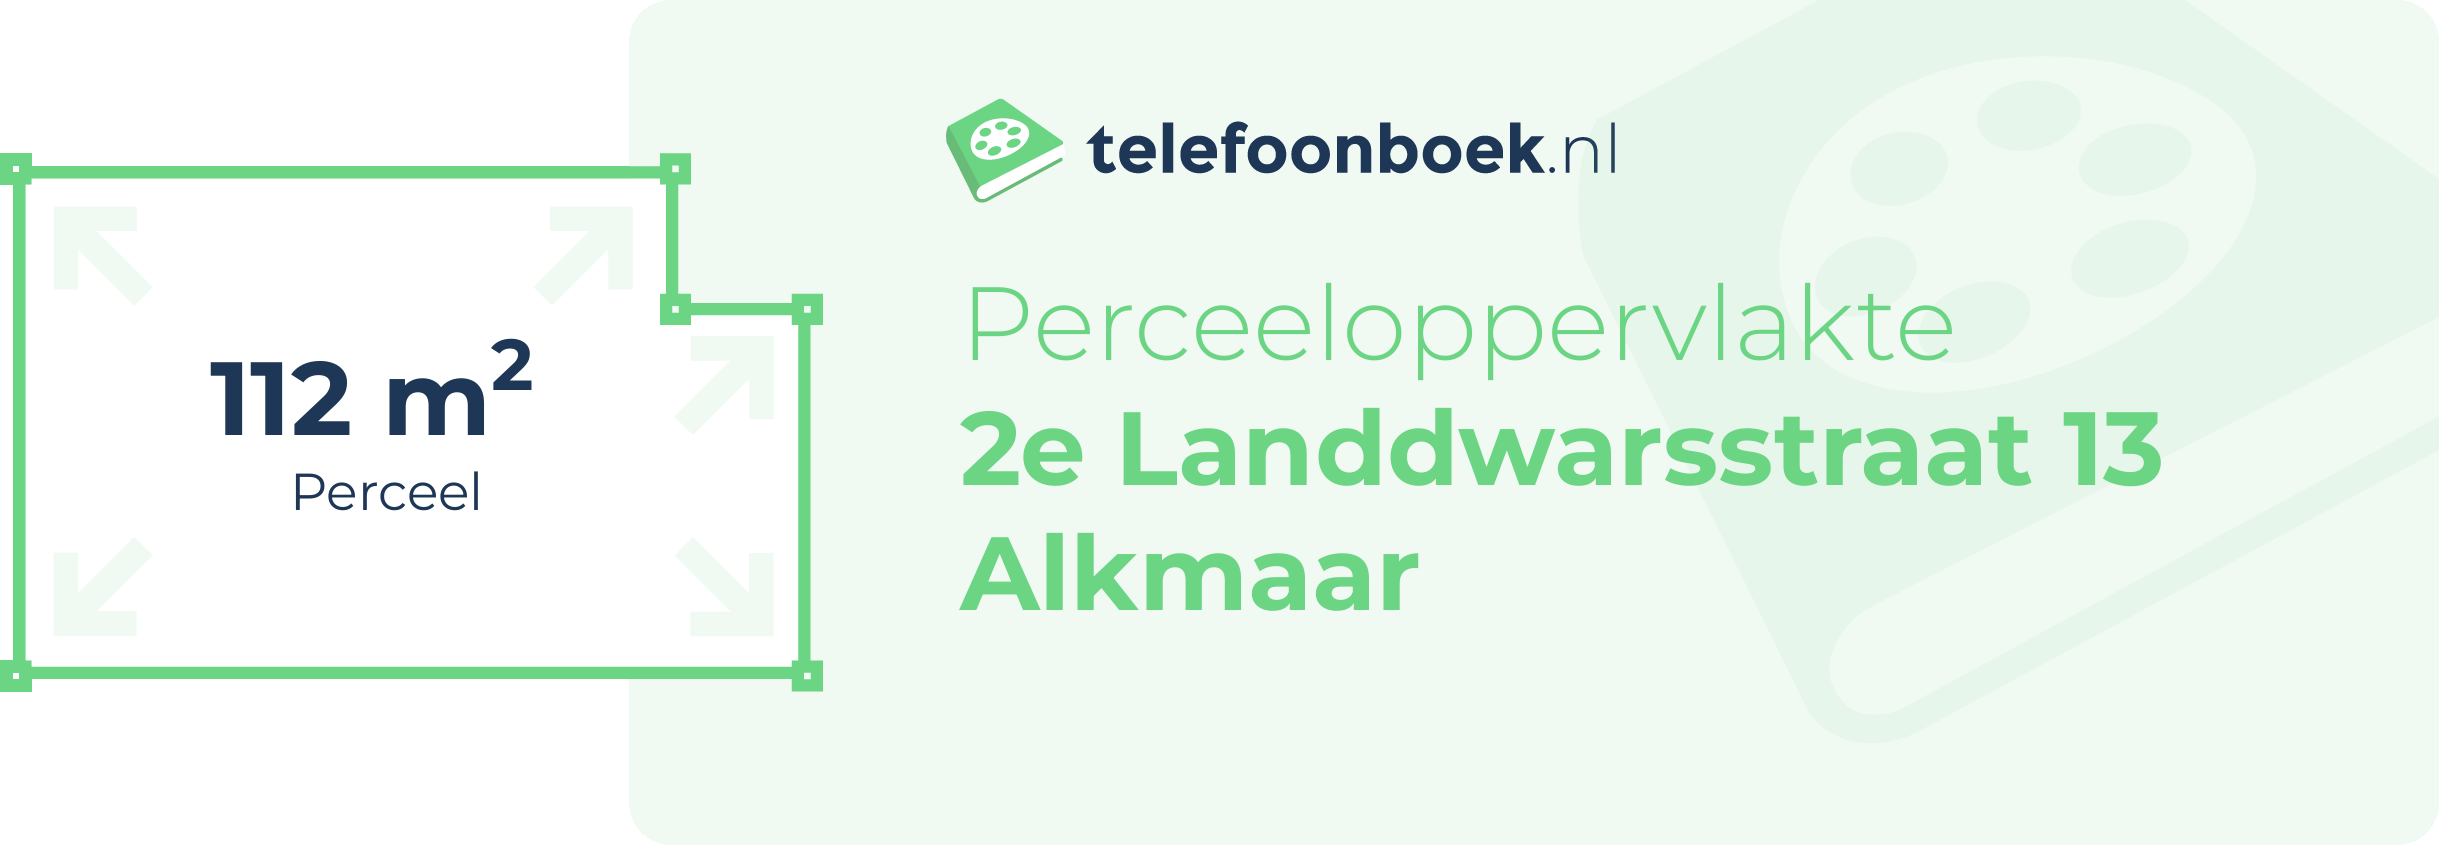 Perceeloppervlakte 2e Landdwarsstraat 13 Alkmaar